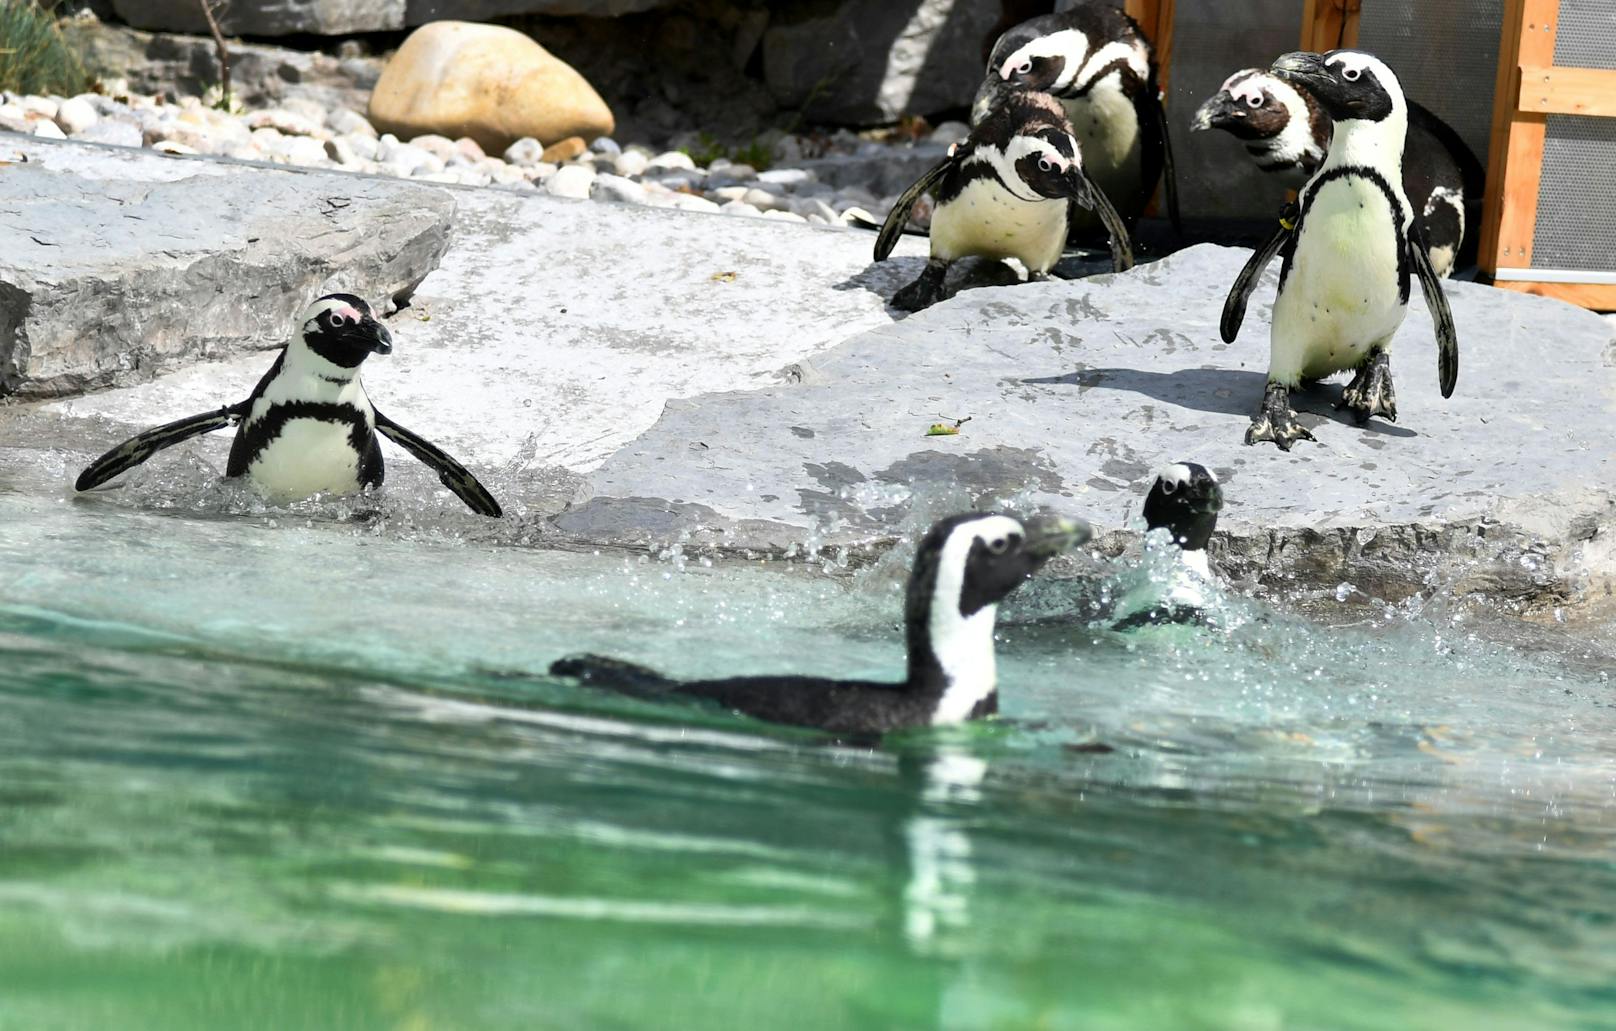 Ein unbekannter Täter hat am 10. Oktober zwischen 8.00 und 16.00 Uhr einen Brillenpinguin aus einem Pinguingehege im Zoo Salzburg entwendet.